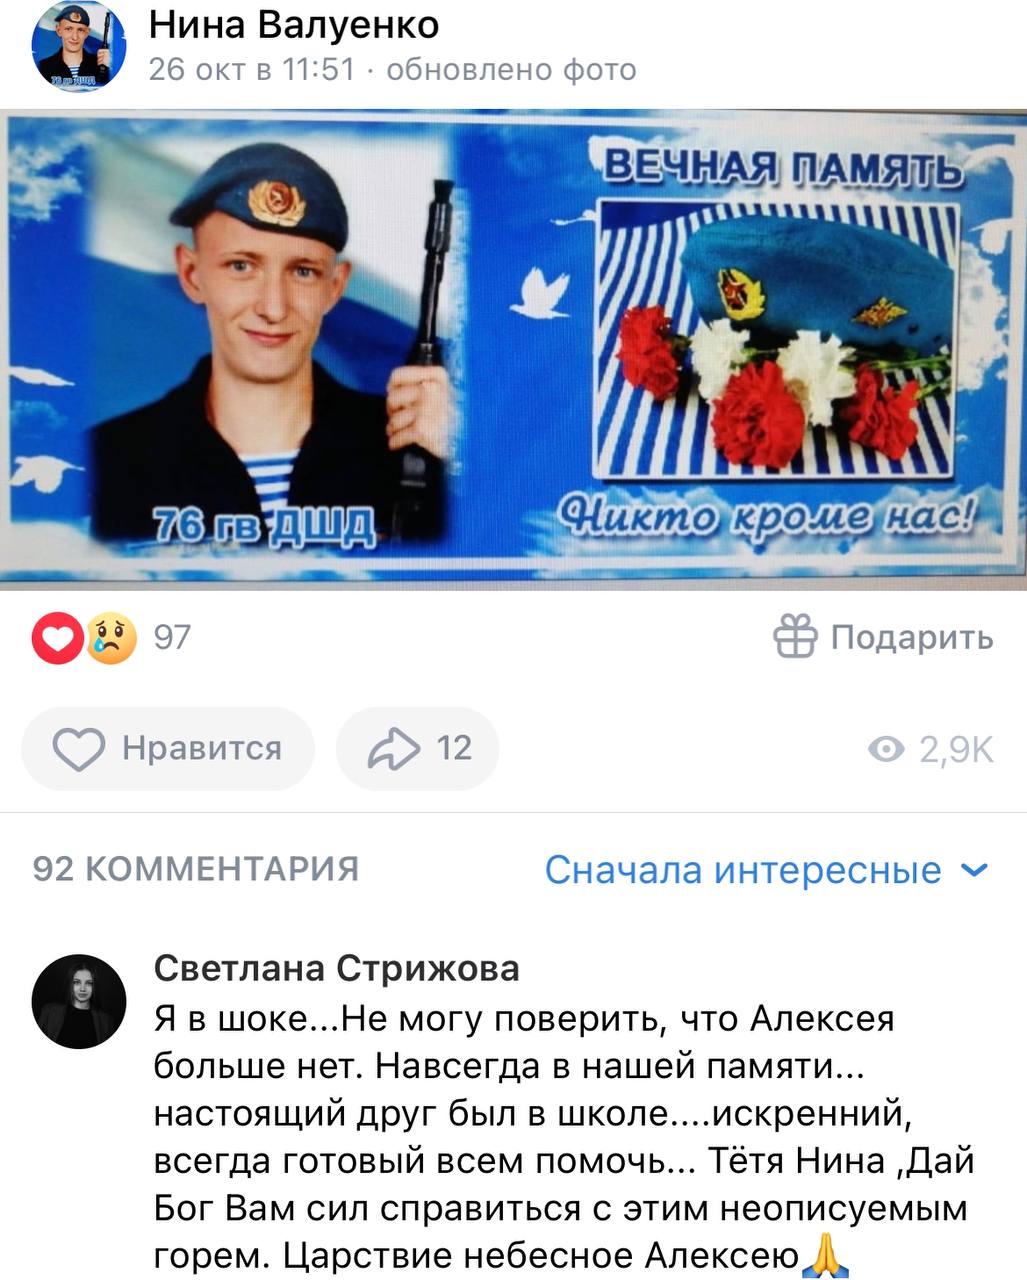 Валуенко Алексей погиб 26.10.2023 из региона Псковская область, 